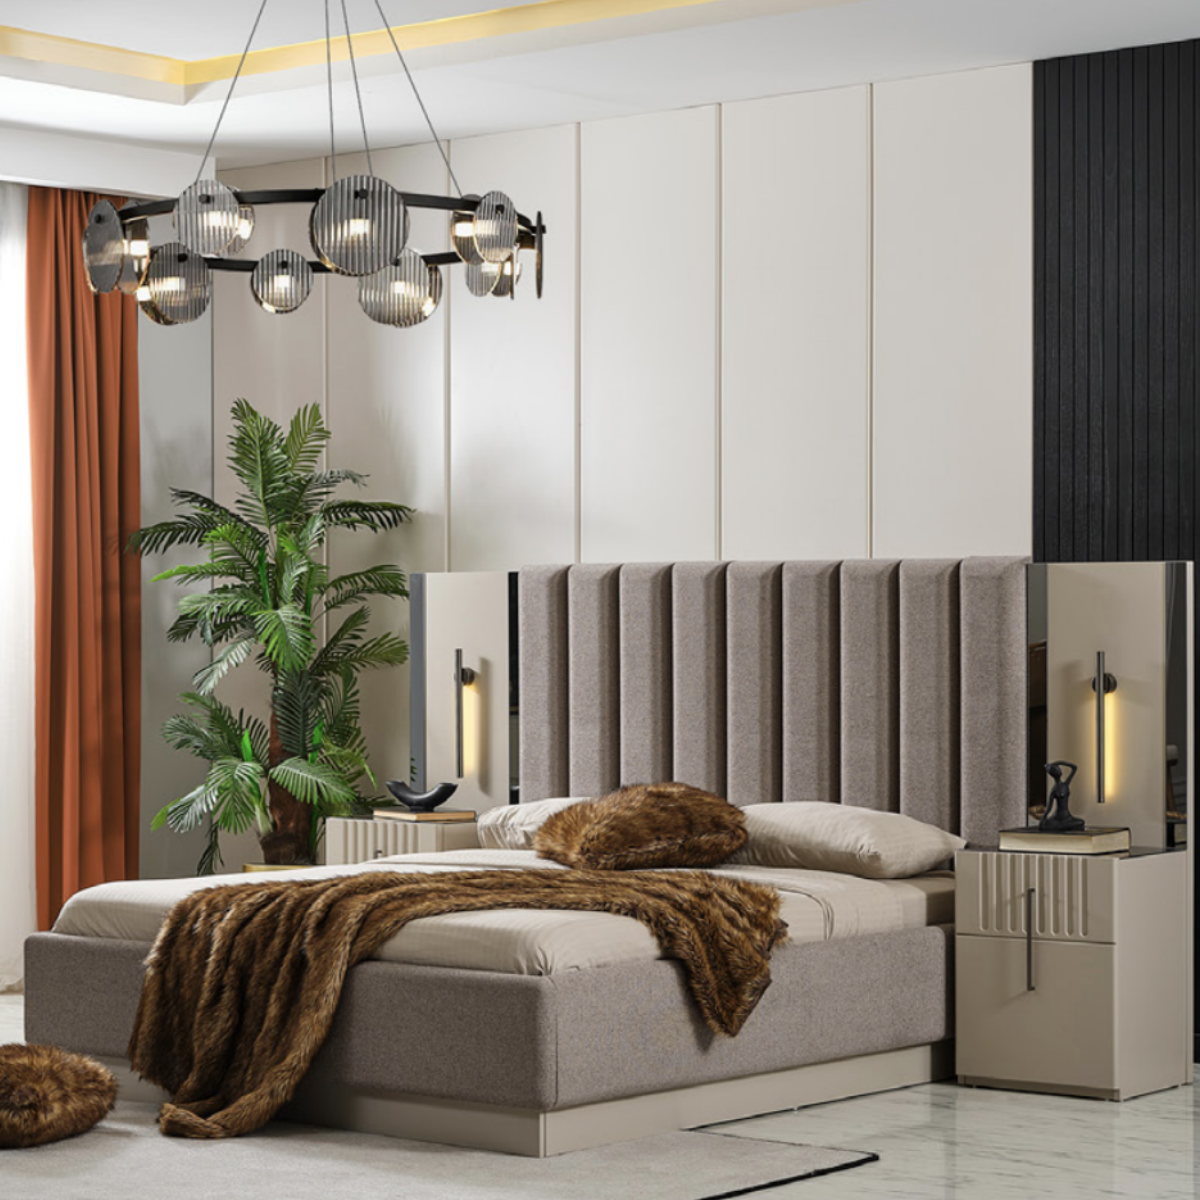 Dormitor Modular De Lux, Asel